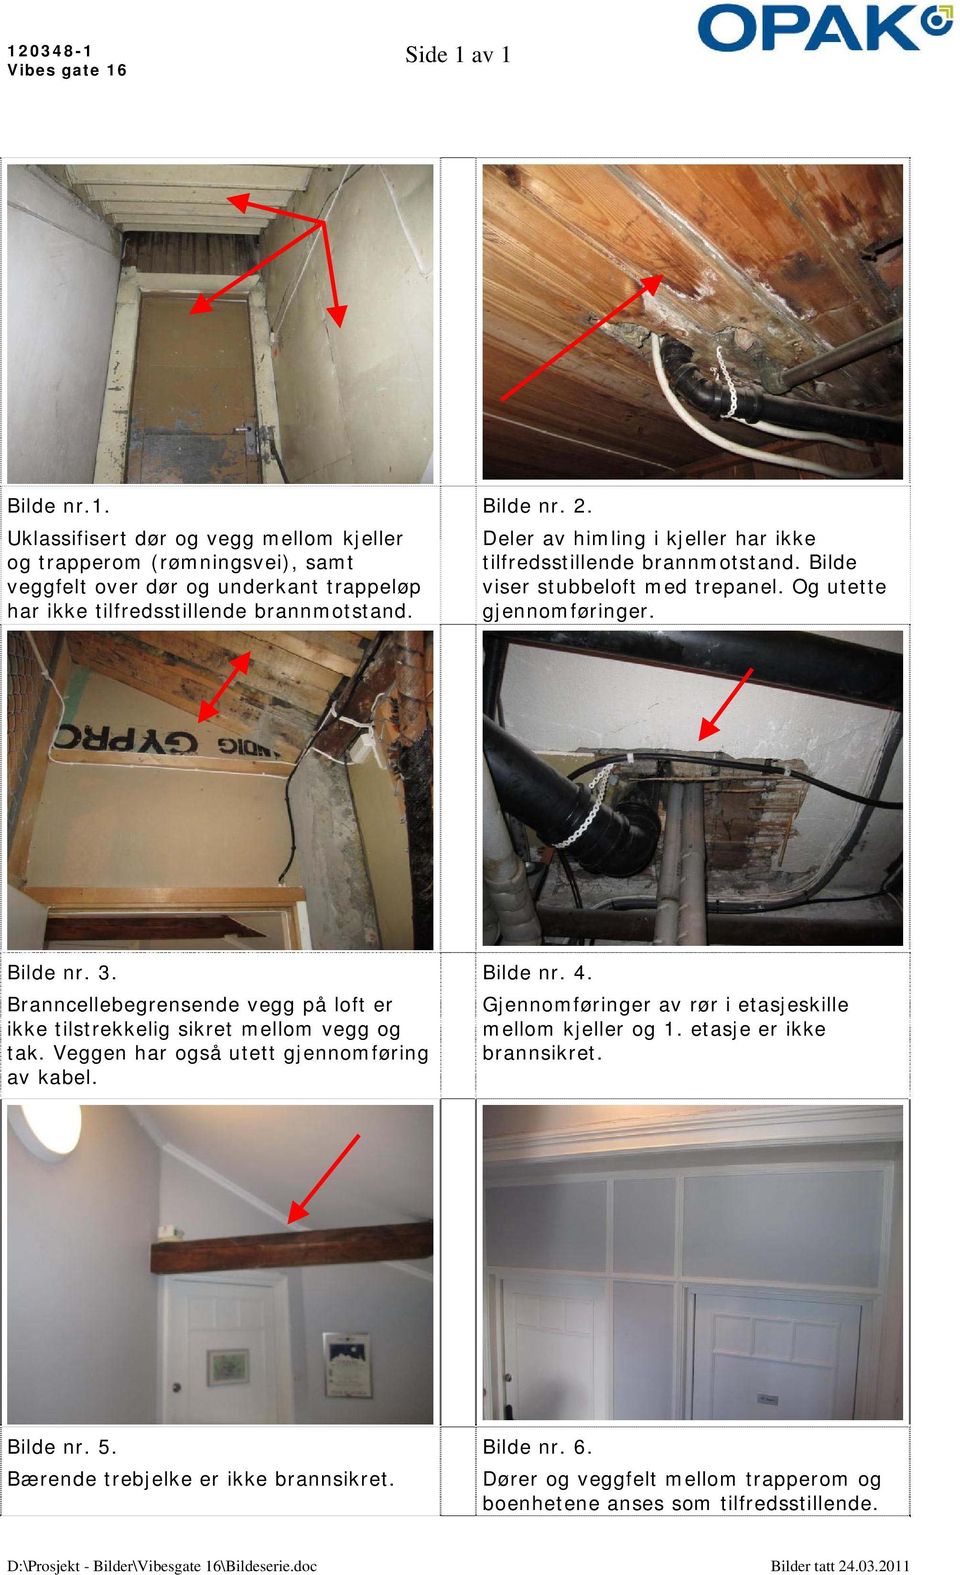 Branncellebegrensende vegg på loft er ikke tilstrekkelig sikret mellom vegg og tak. Veggen har også utett gjennomføring av kabel. Bilde nr. 4.